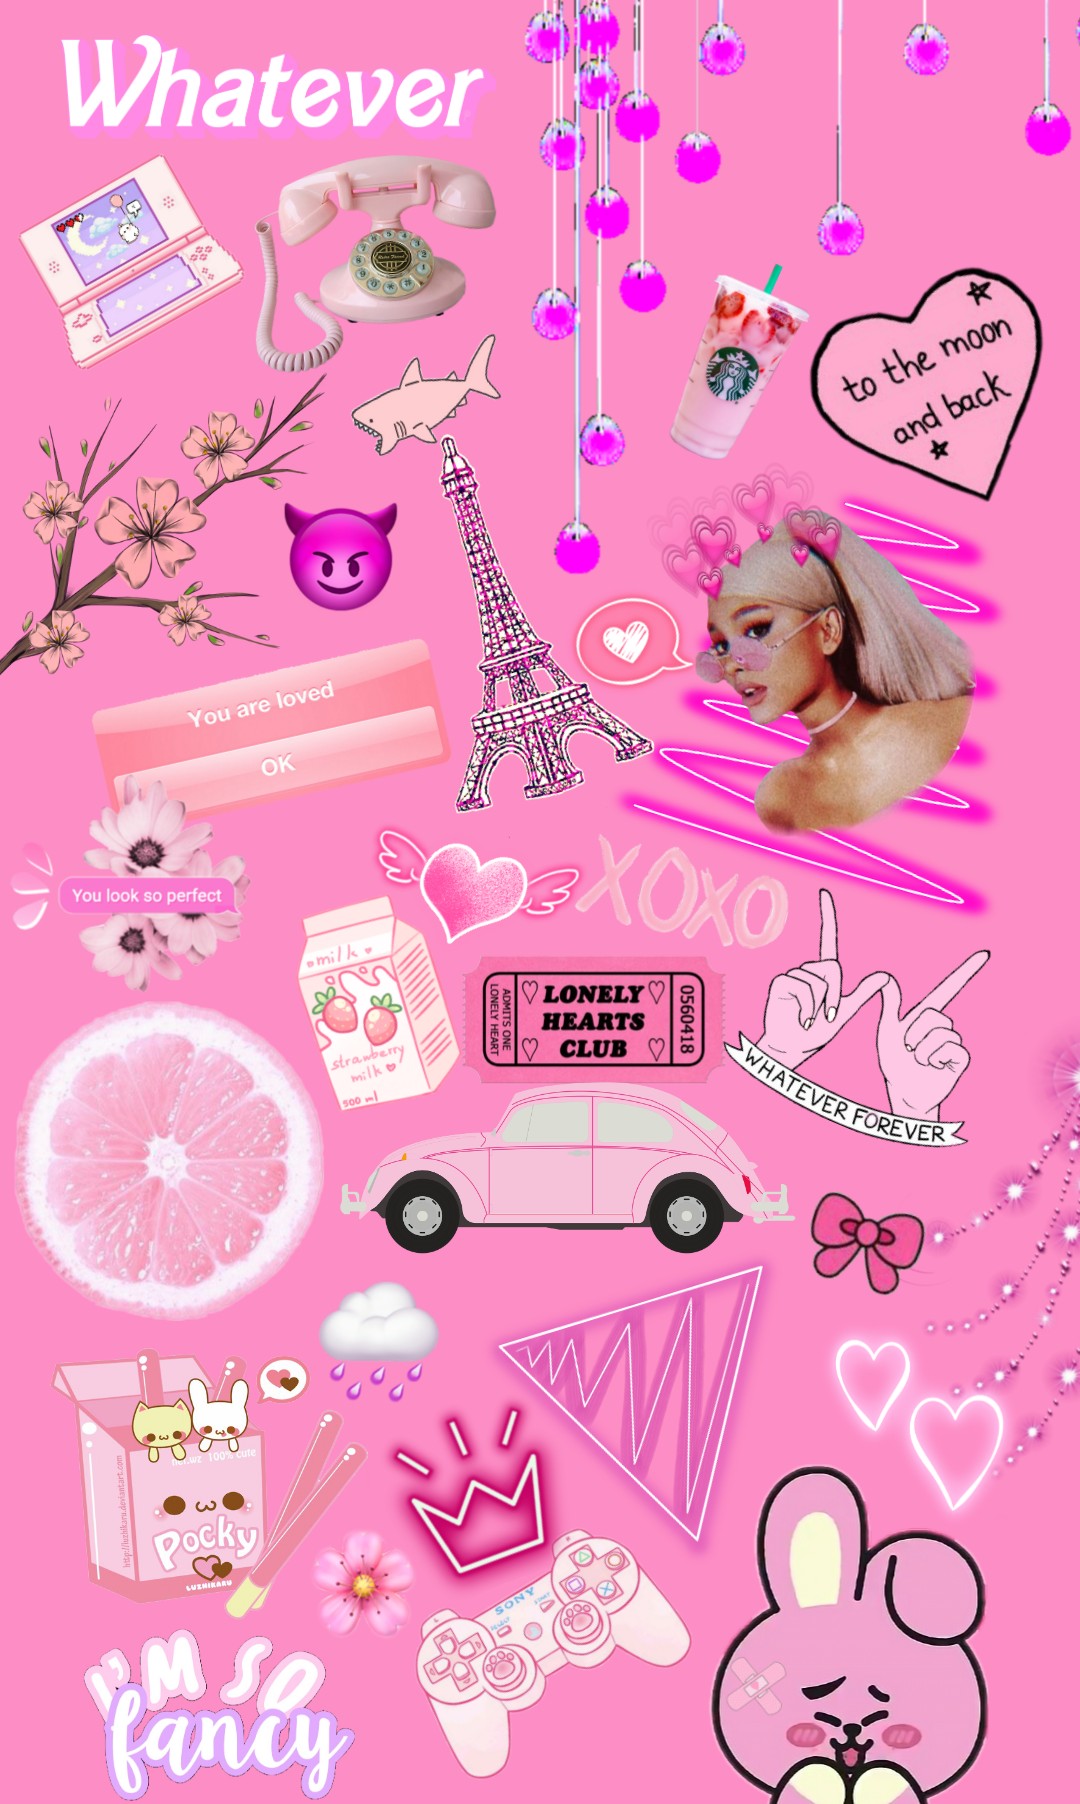 freetoedit  tumblr pink  background wallpaper  girly  